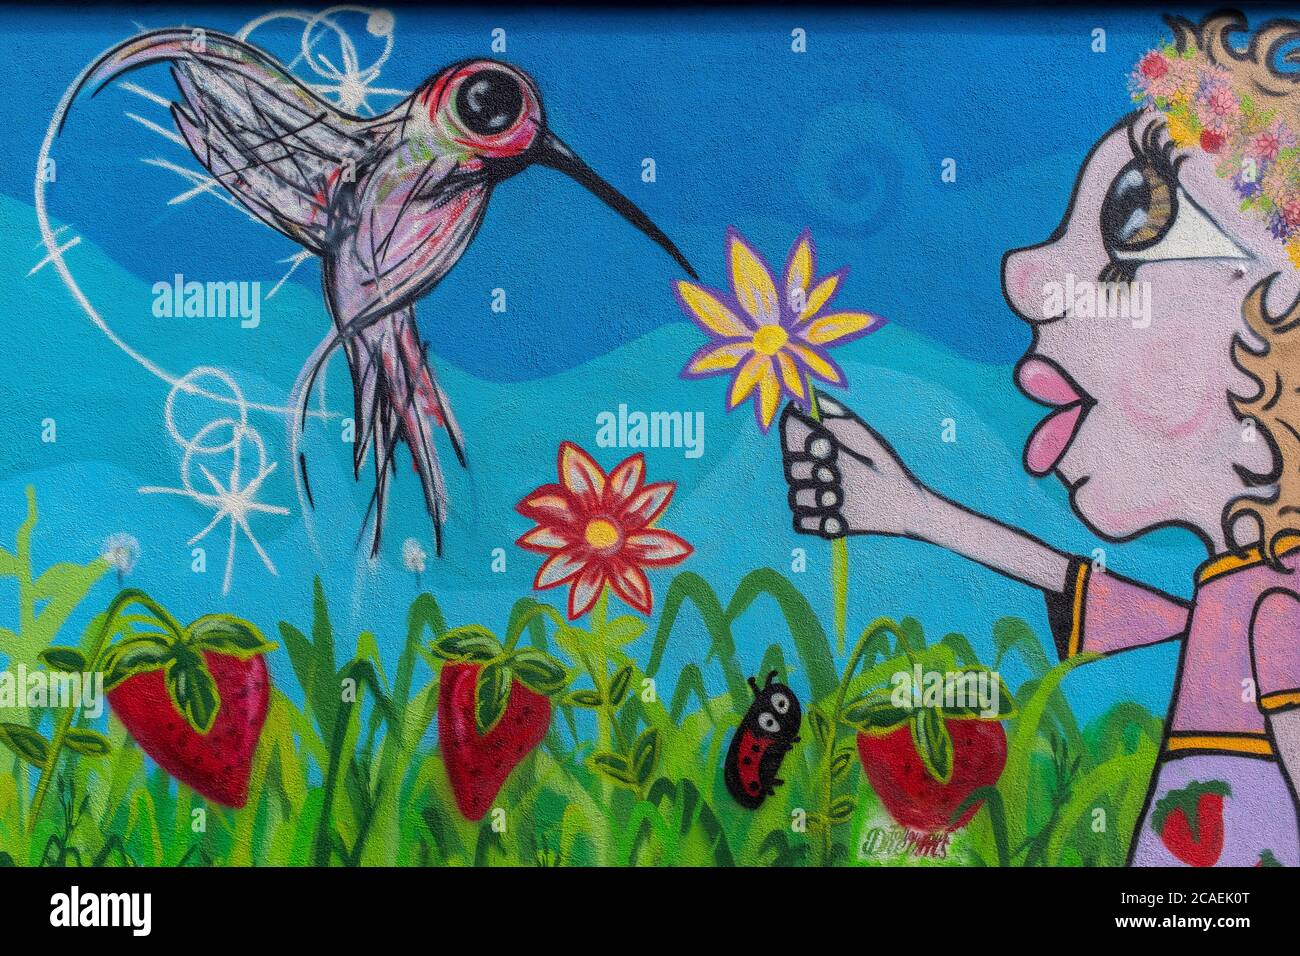 street art in Albuquerque, New Mexico : 'Follow Your Dreams' Stock Photo